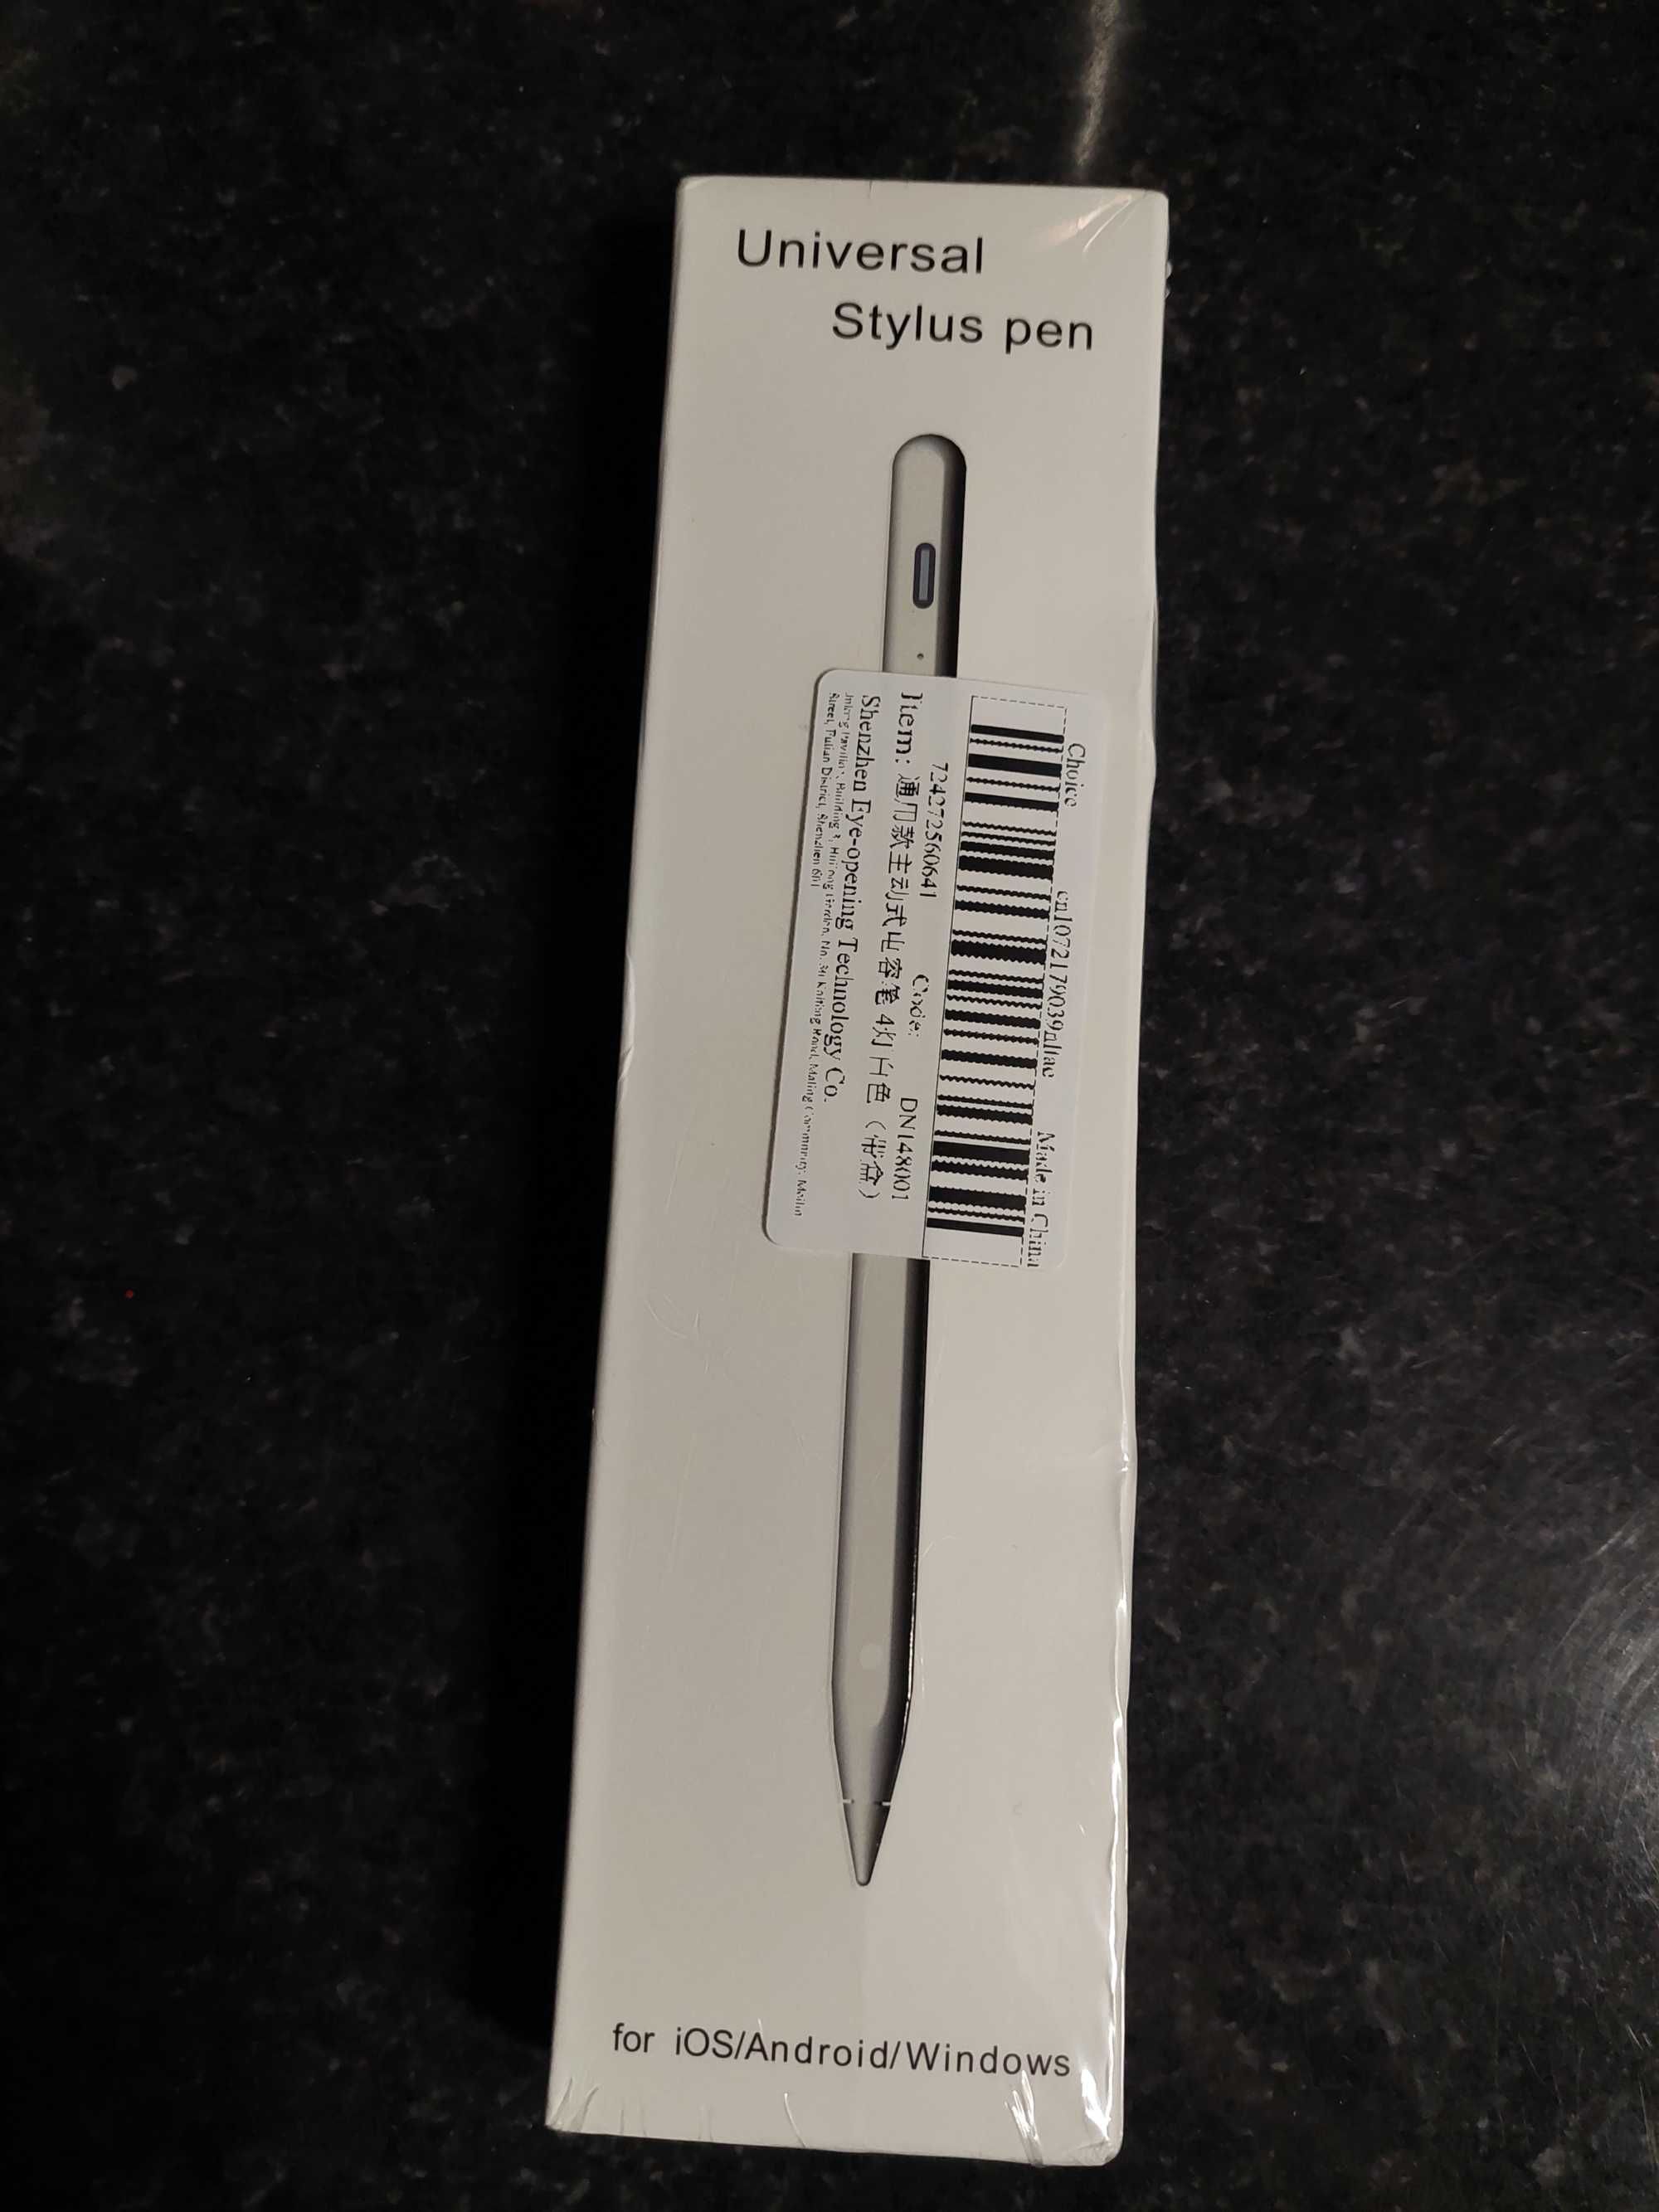 Stylus pen universal, android, apple, windows.